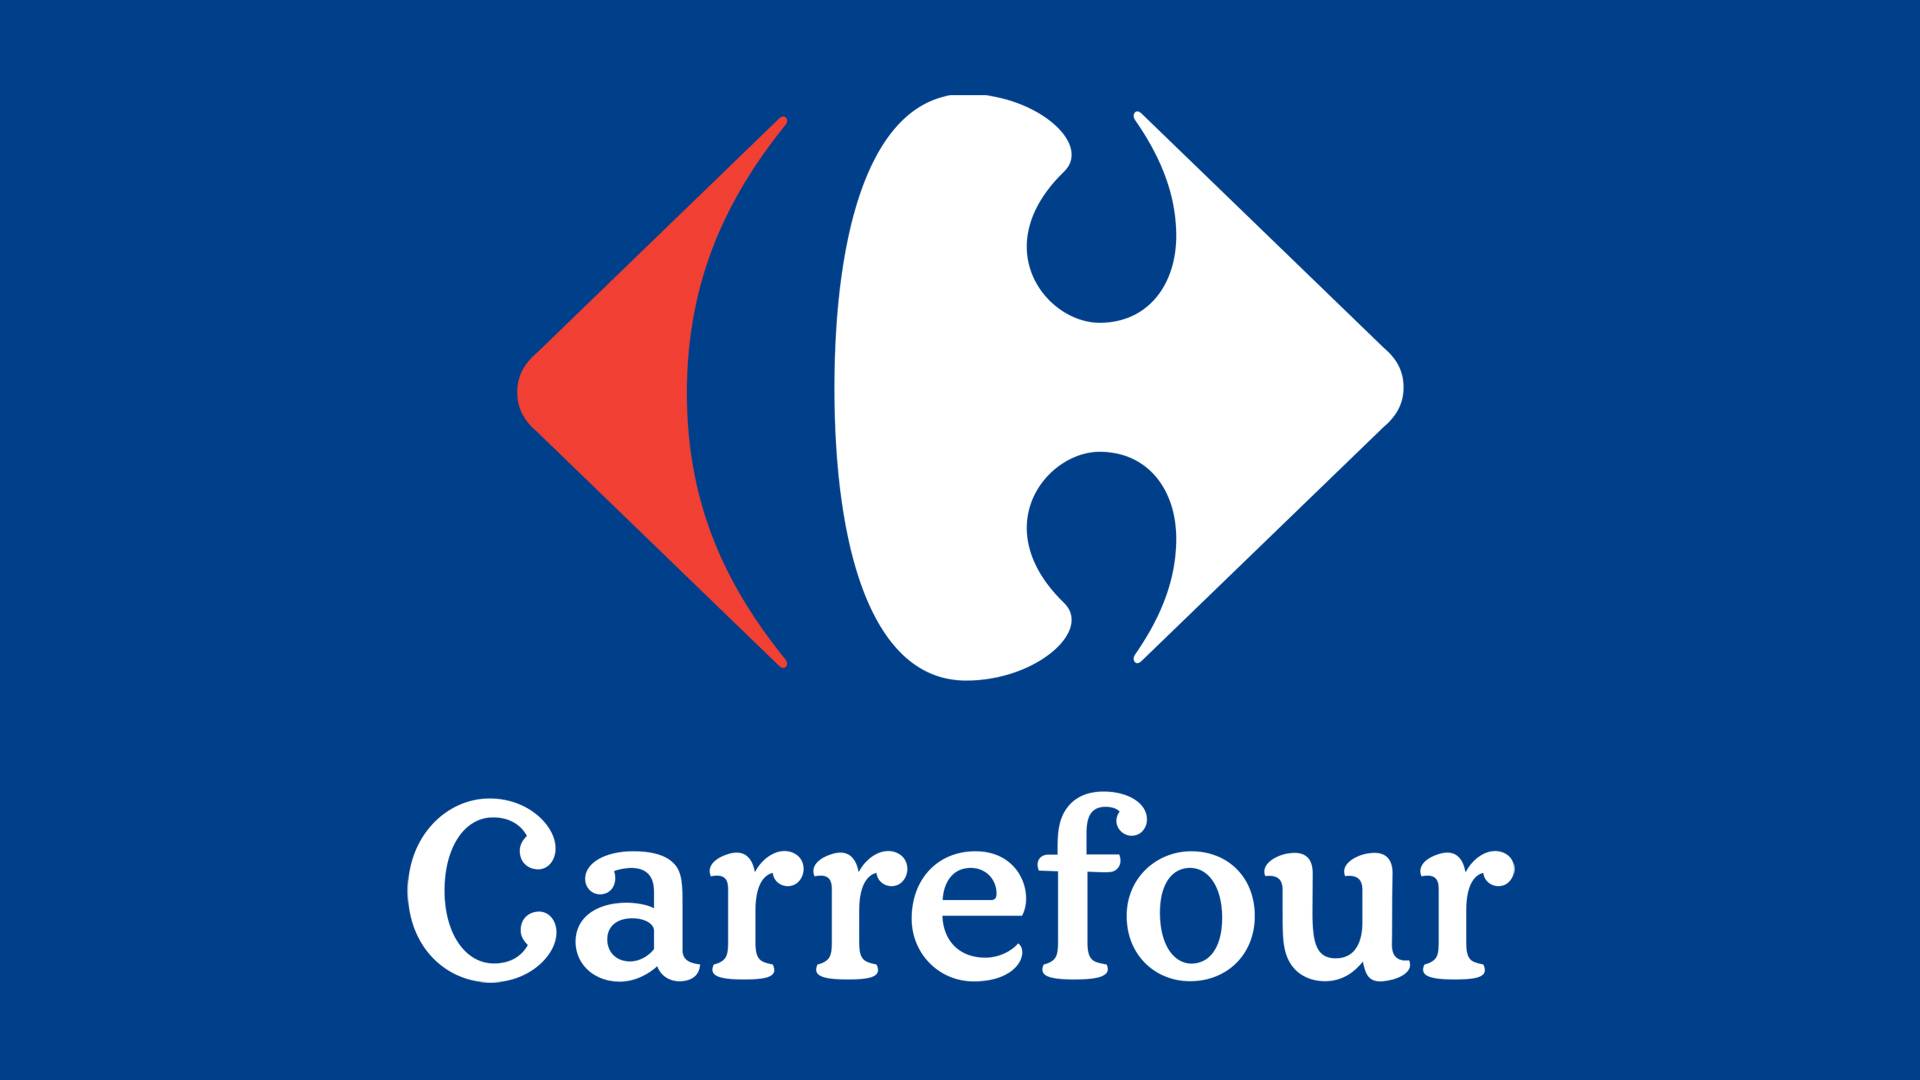 Carrefour-Betrug